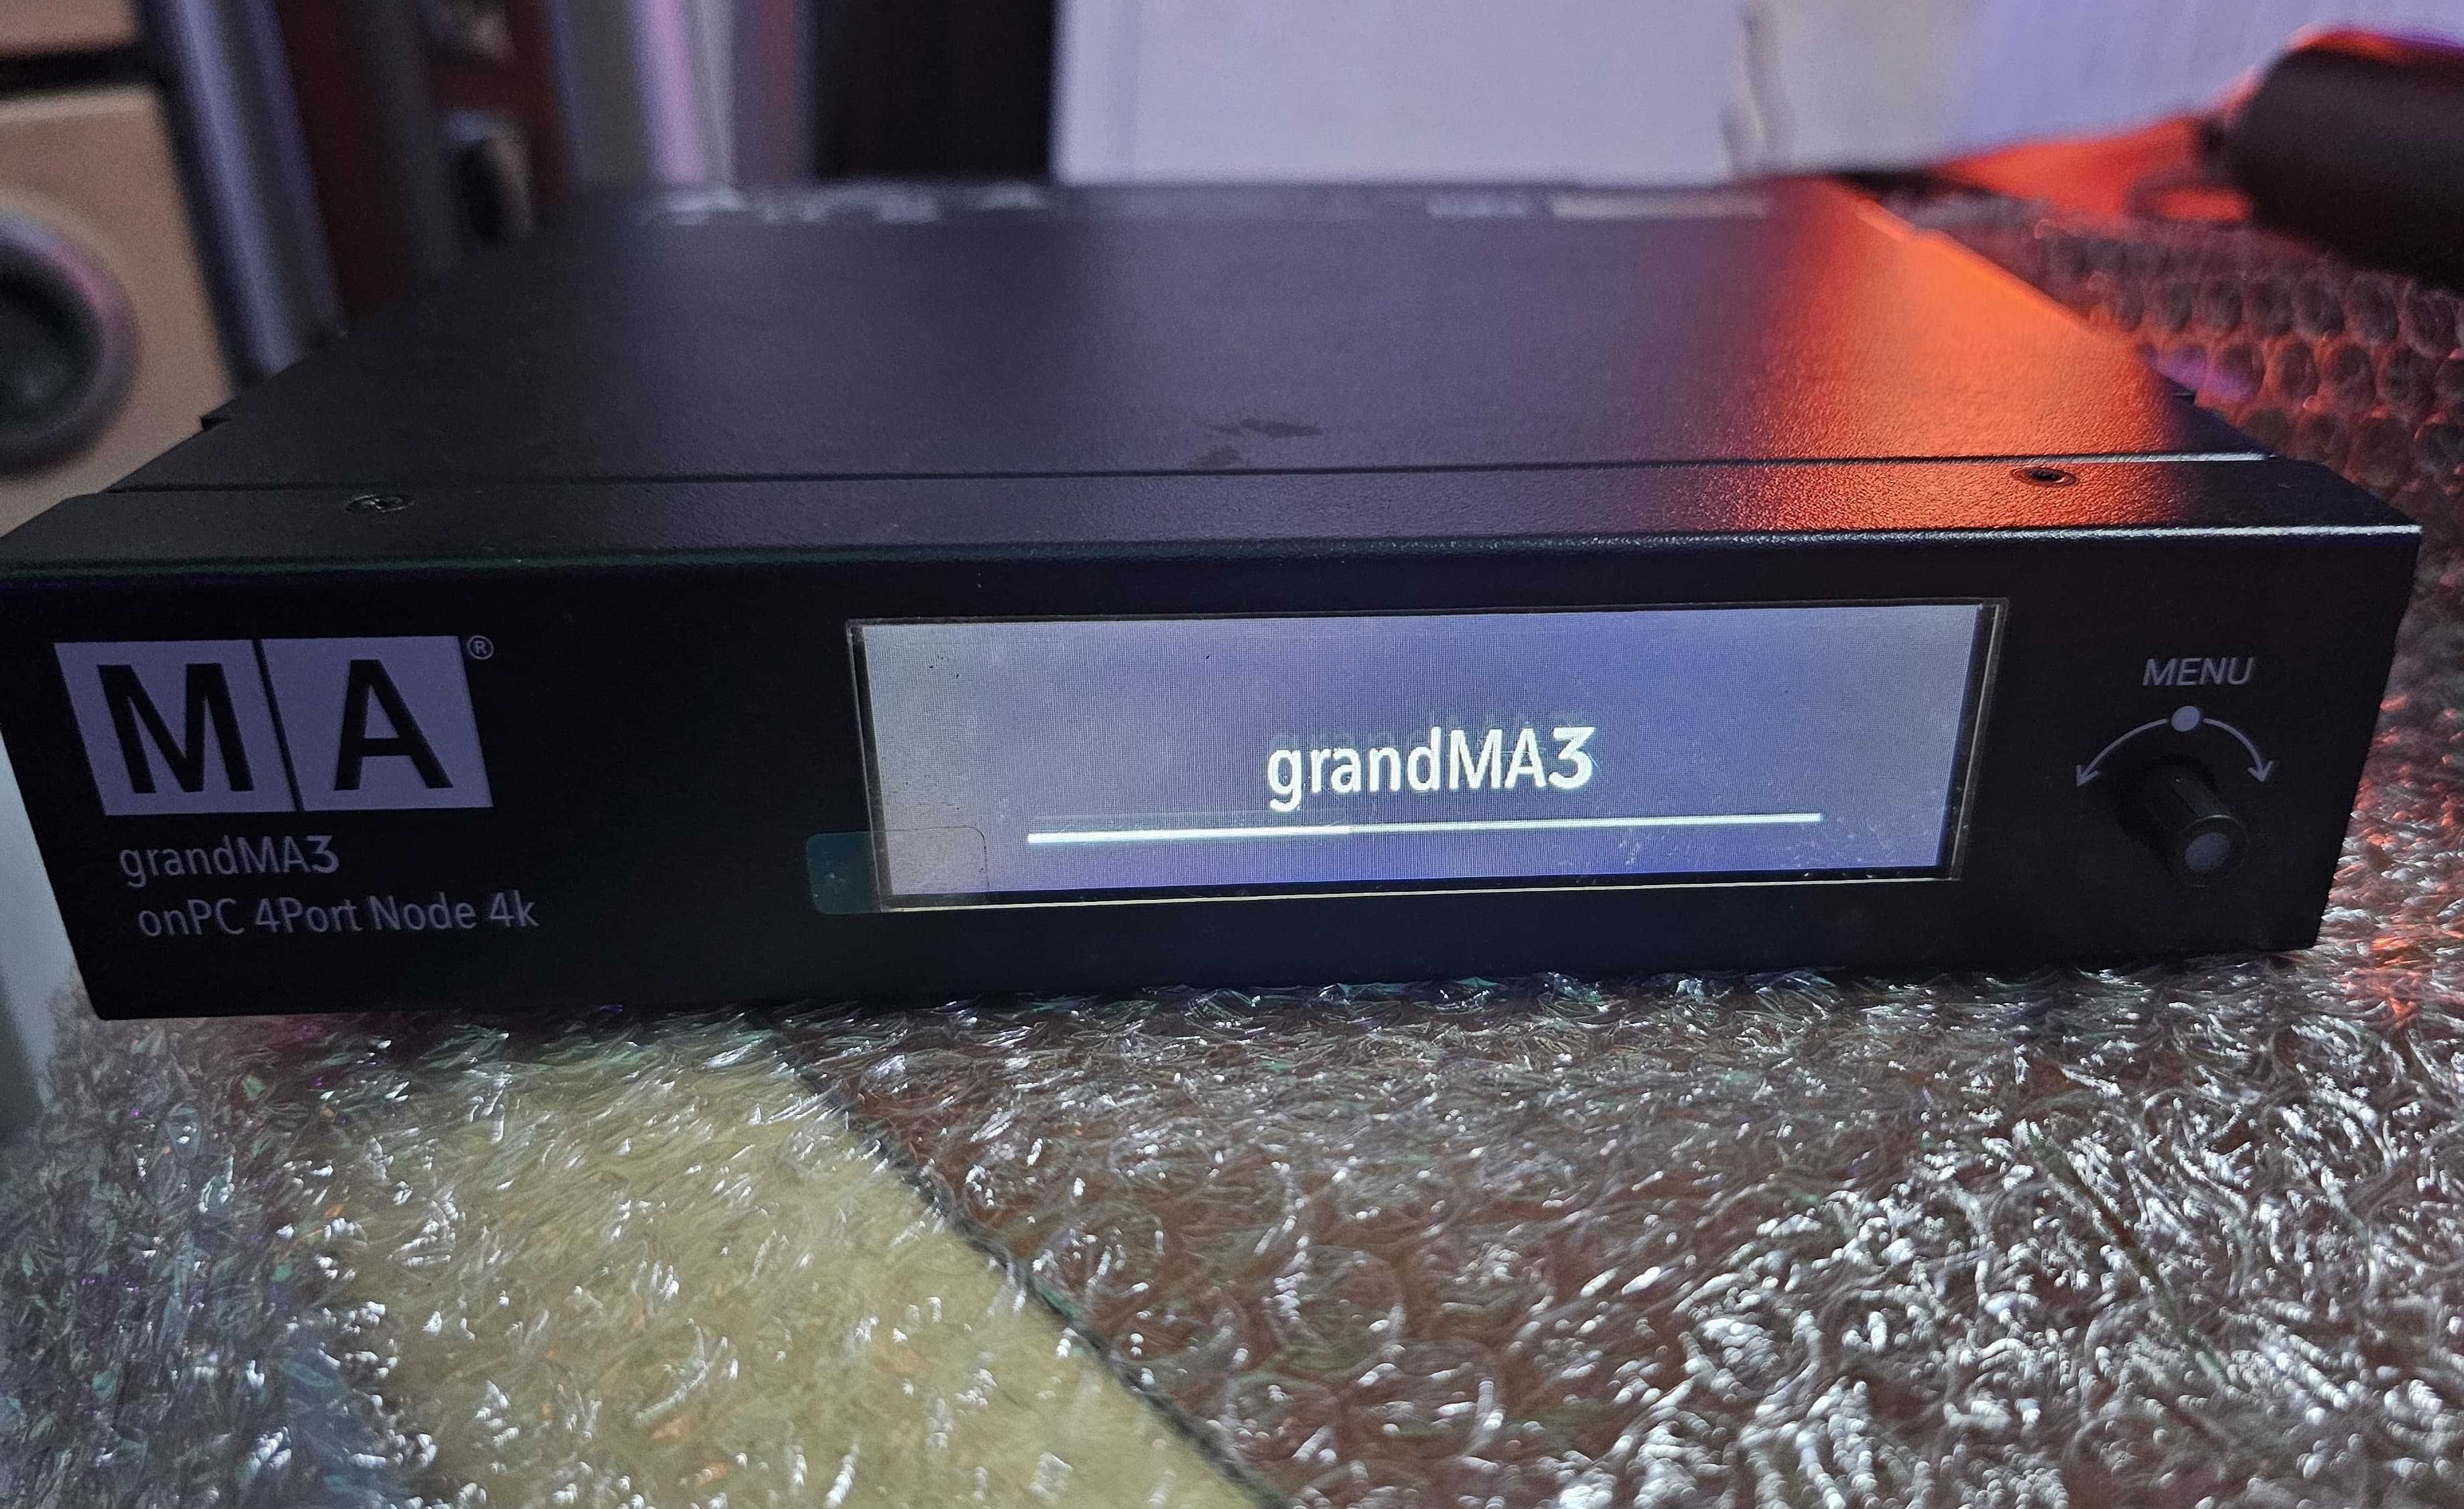 GrandMA3 onPC 4port node 4k